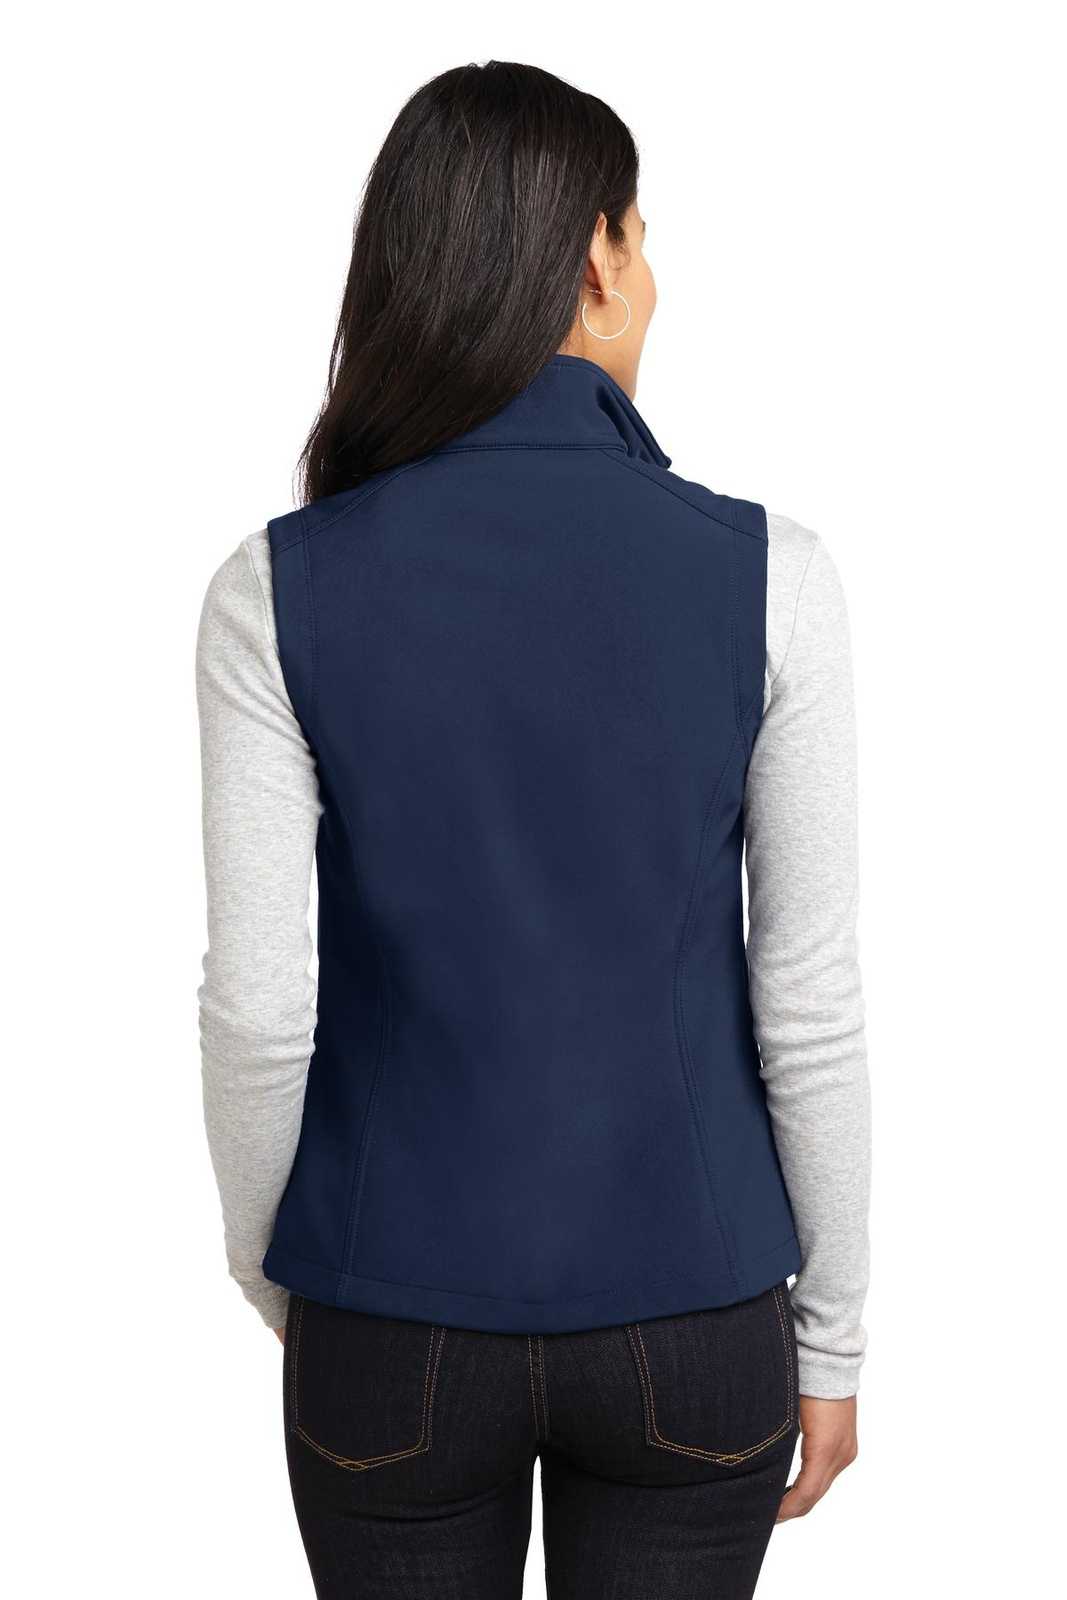 Port Authority L325 Ladies Core Soft Shell Vest - Dress Blue Navy - HIT a Double - 2